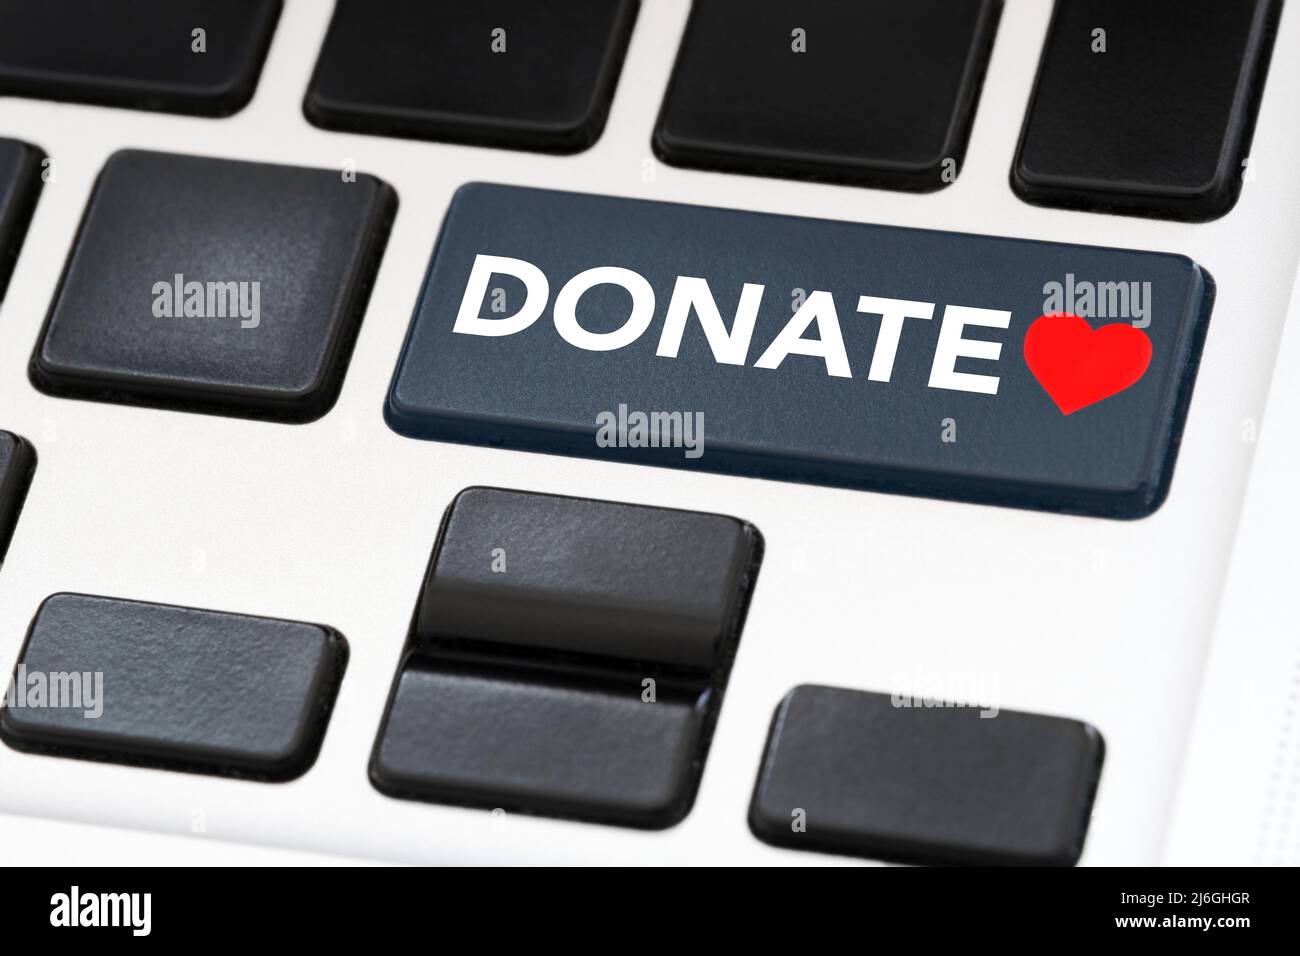 Tasto della tastiera con la parola Donate e un cuore rosso. Concetti: Solidarietà, sostegno alle cause caritative, aiuto alle vittime di catastrofi, rifugiati, persone provenienti da Foto Stock